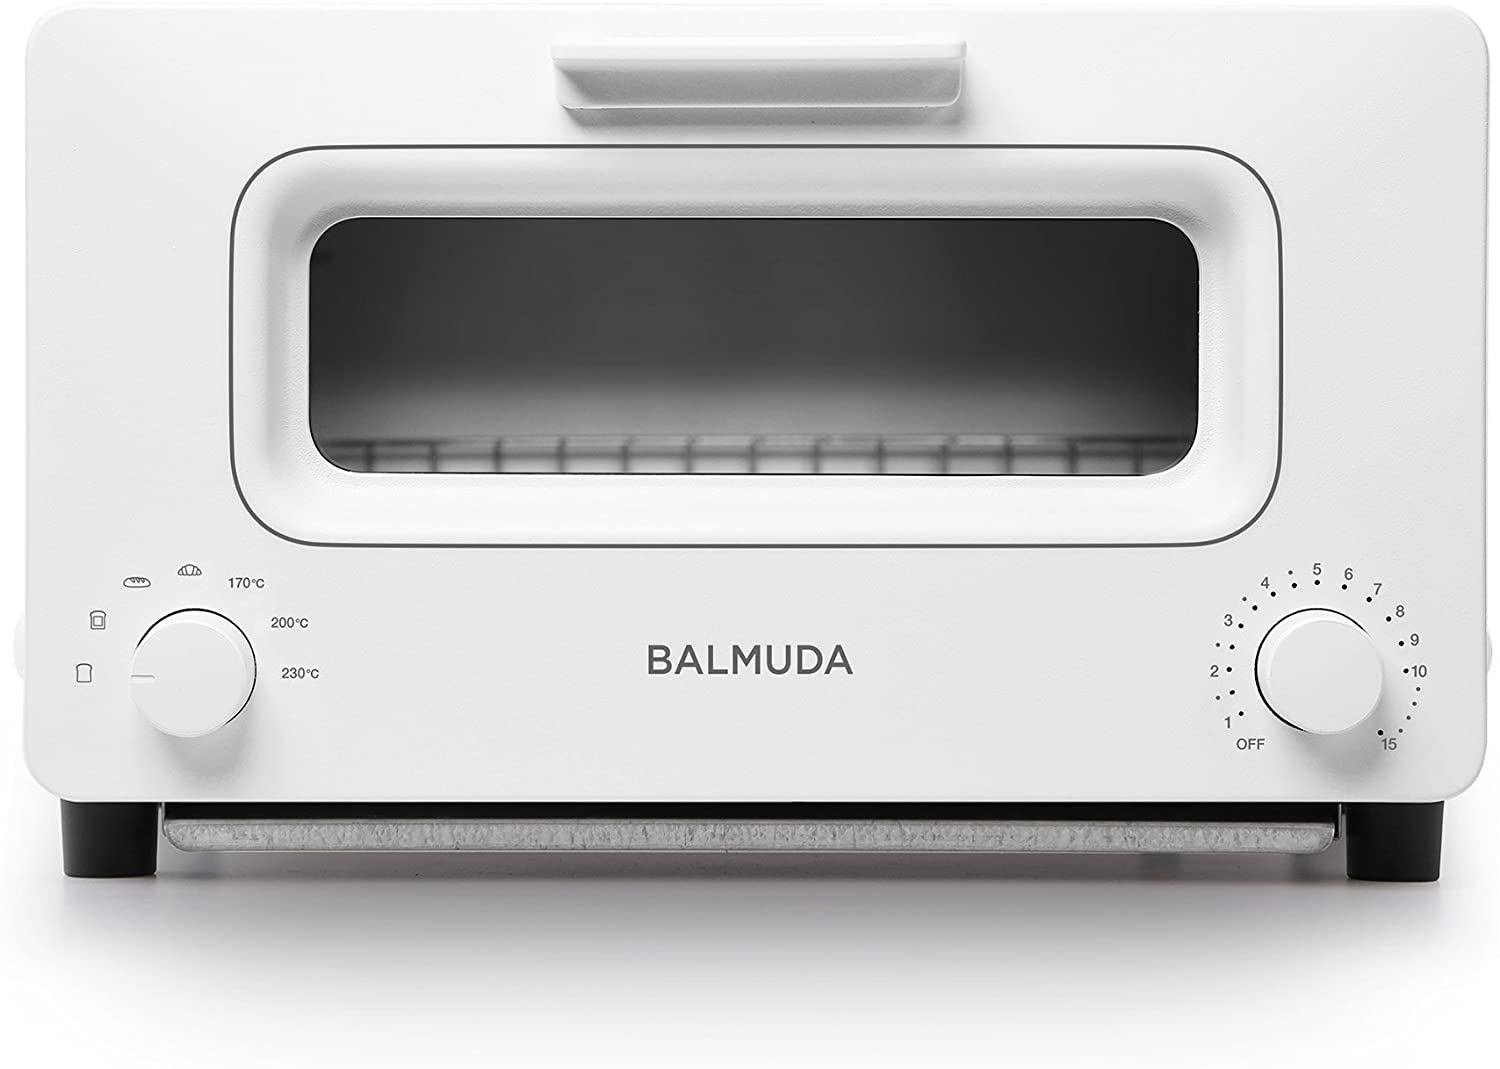 【BALMUDA】スチームオーブントースターBALMUDA The Toaster(ホワイト) |開業・開店・移転祝いにWebカタログギフト